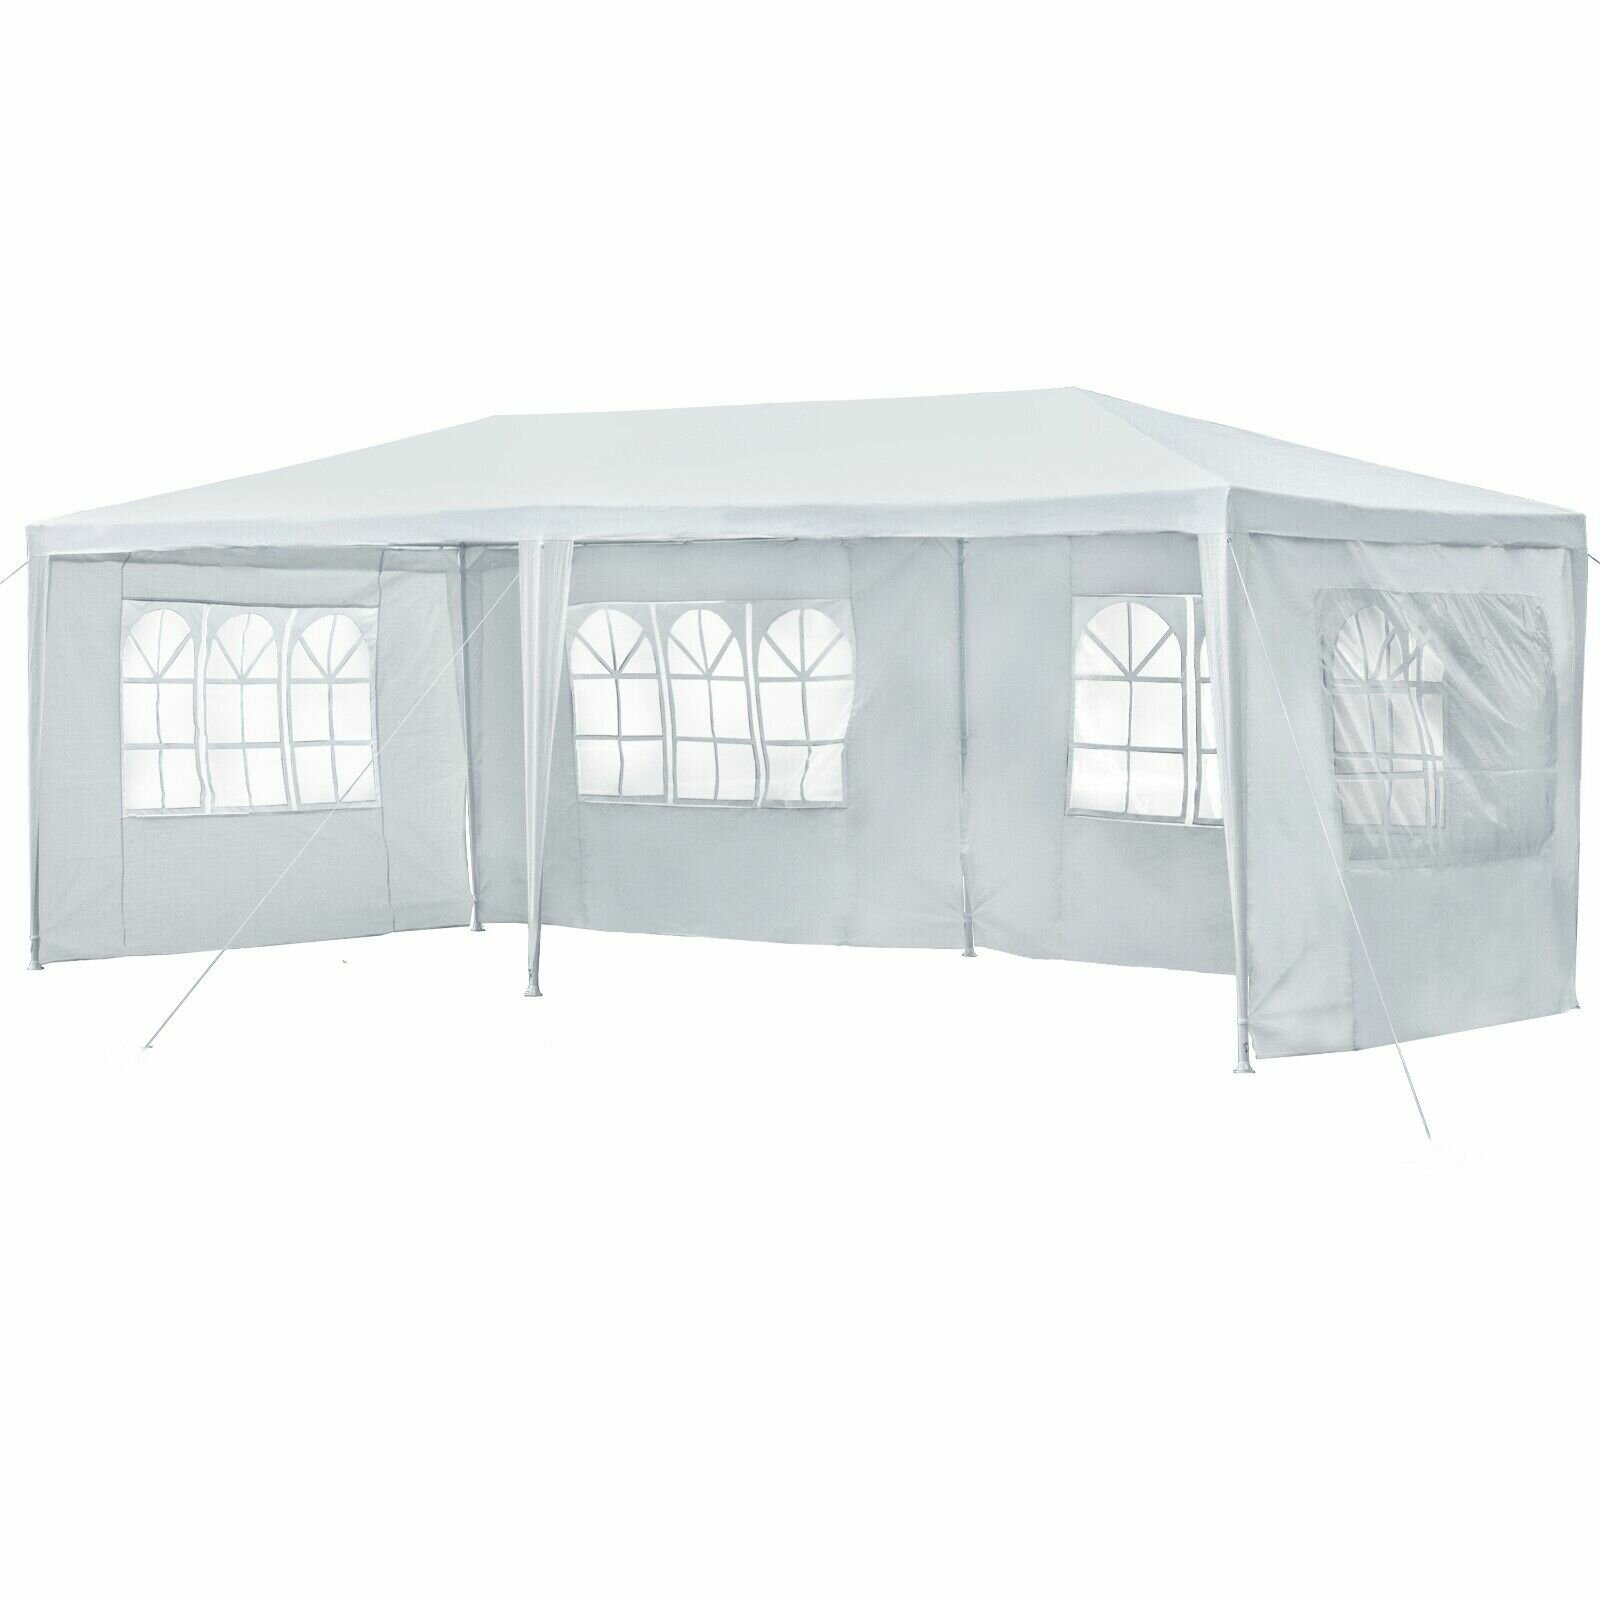 arede lateral de tenda de 10x20 pés, impermeável com janelas, para abrigo ao ar livre fácil sem topo de tenda de festa.